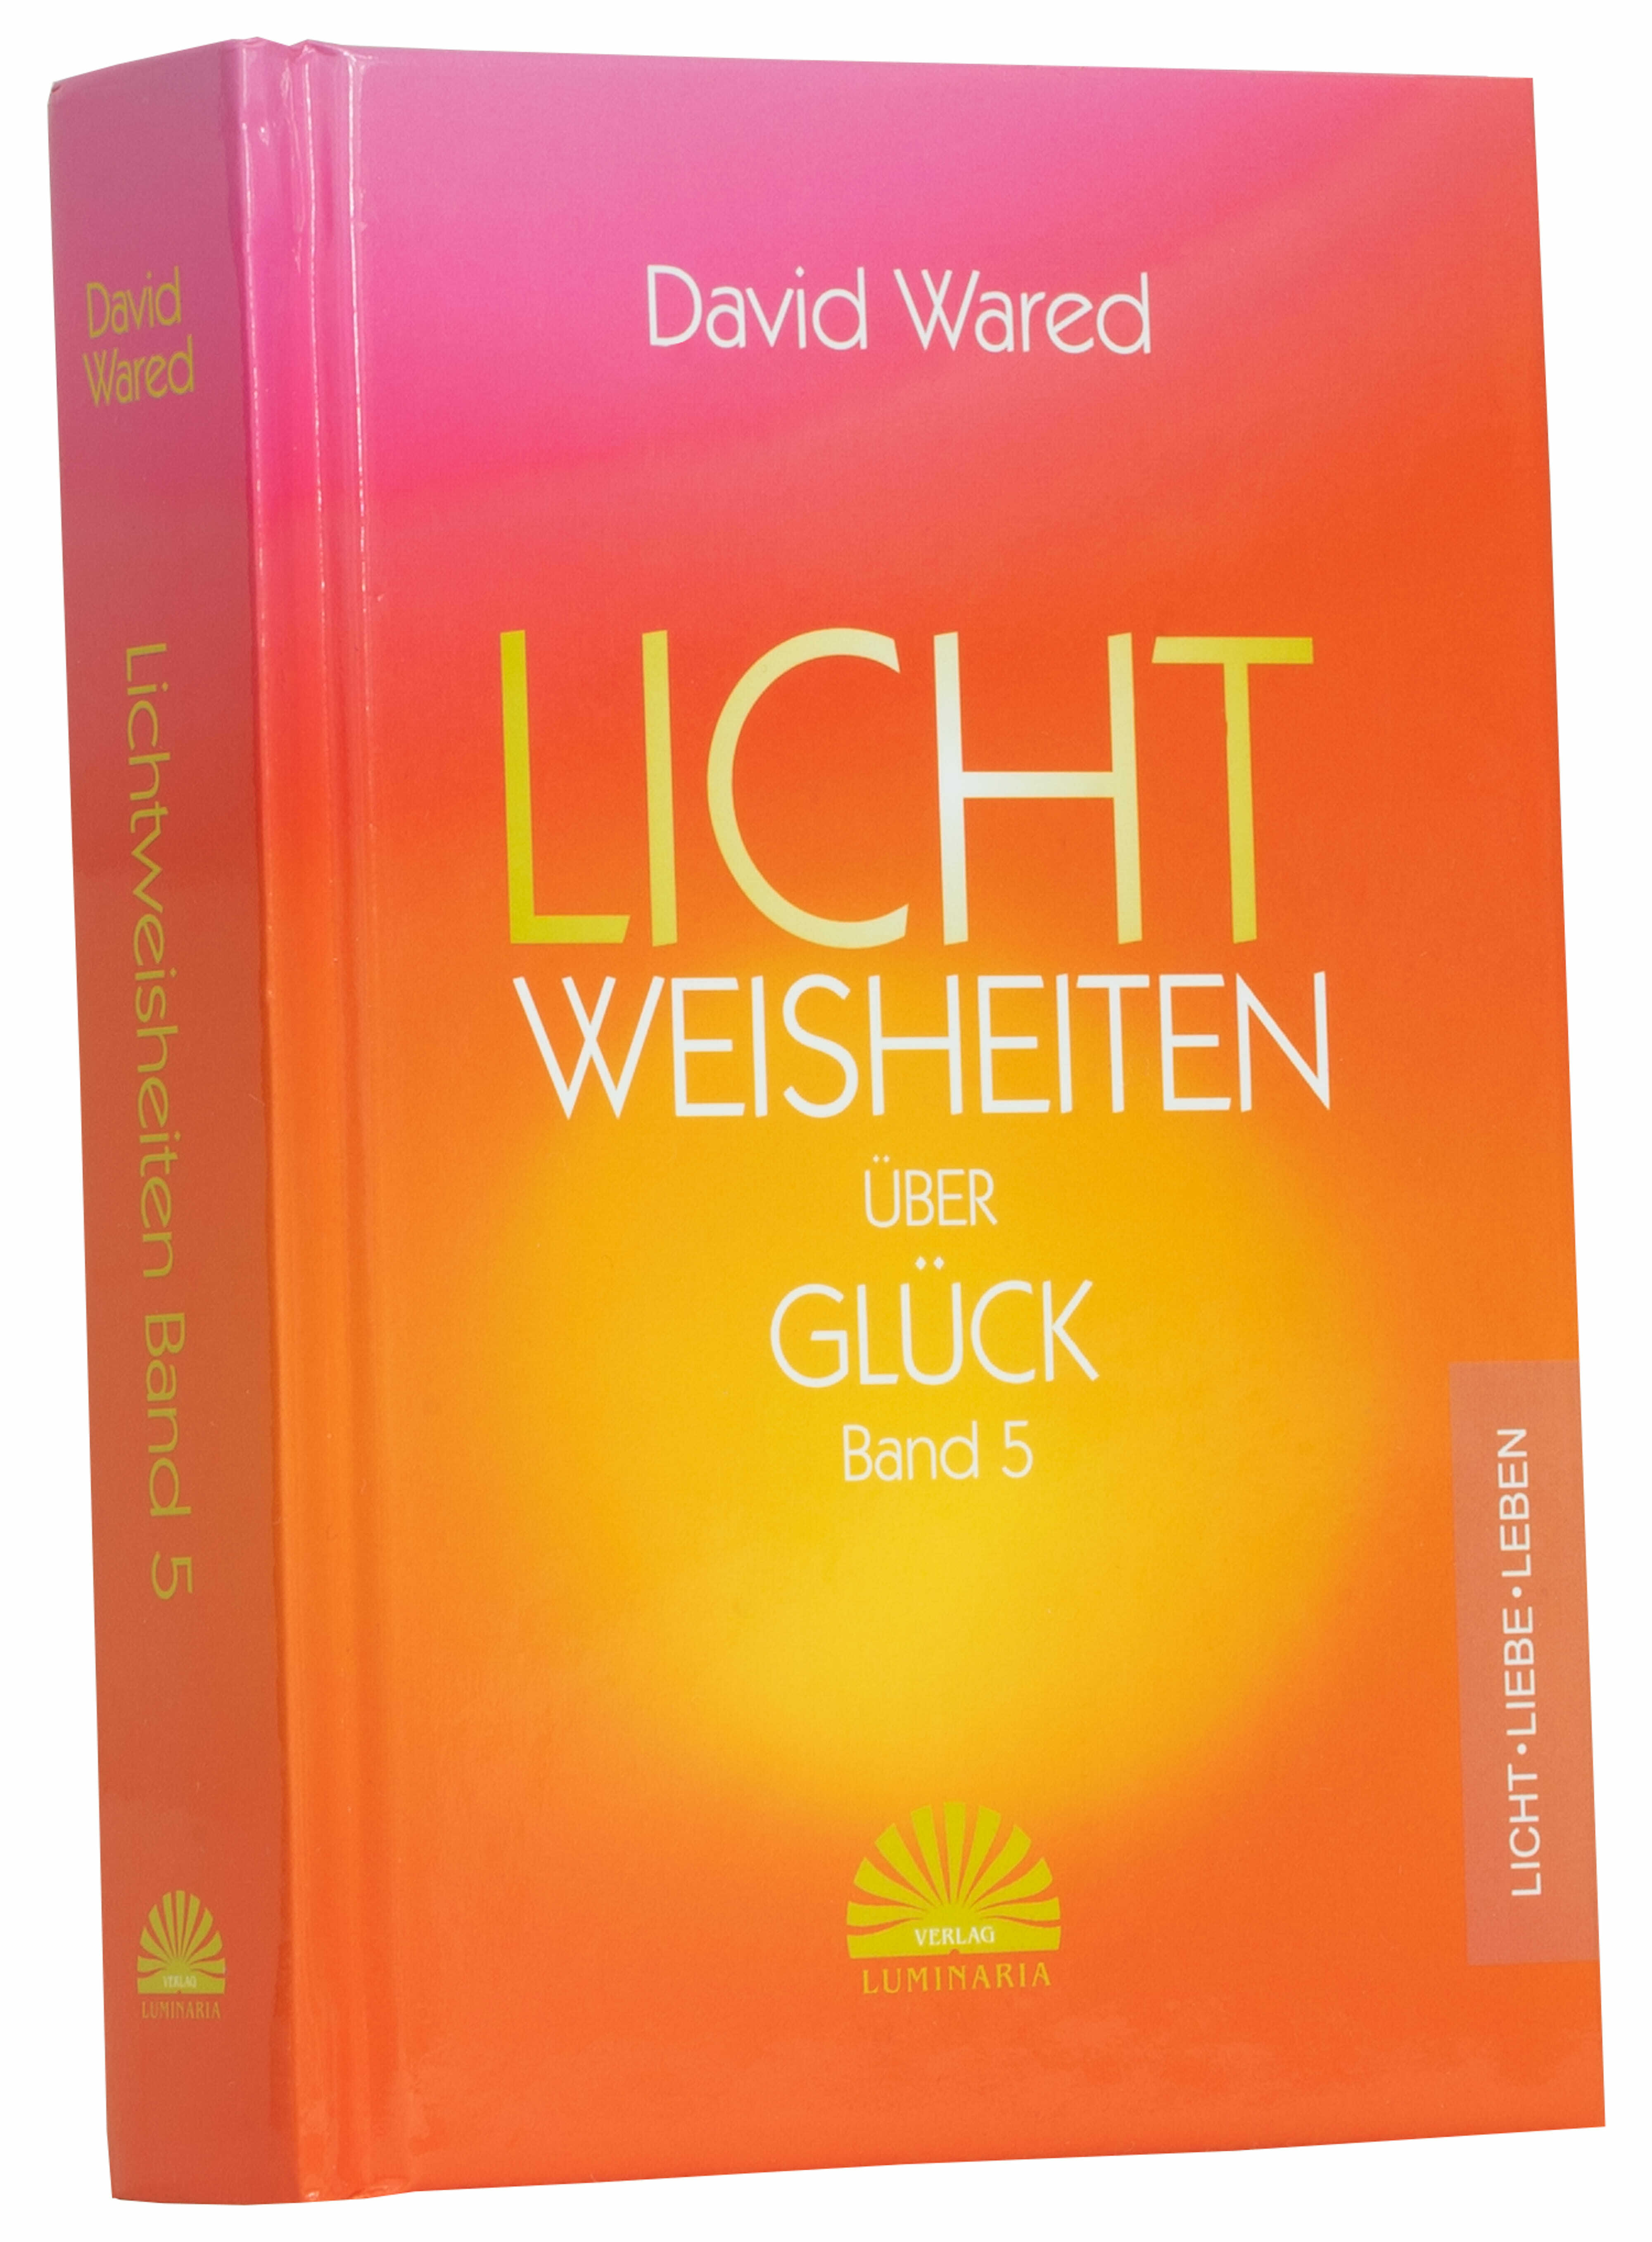 Buch Lichtweisheiten über Glück Band 5 von David Wared - 365 Poesien aus dem Lichtbewusstsein und der Lichtbewusstseinsphilosophie - Lichtbewusstseinakademie Süd